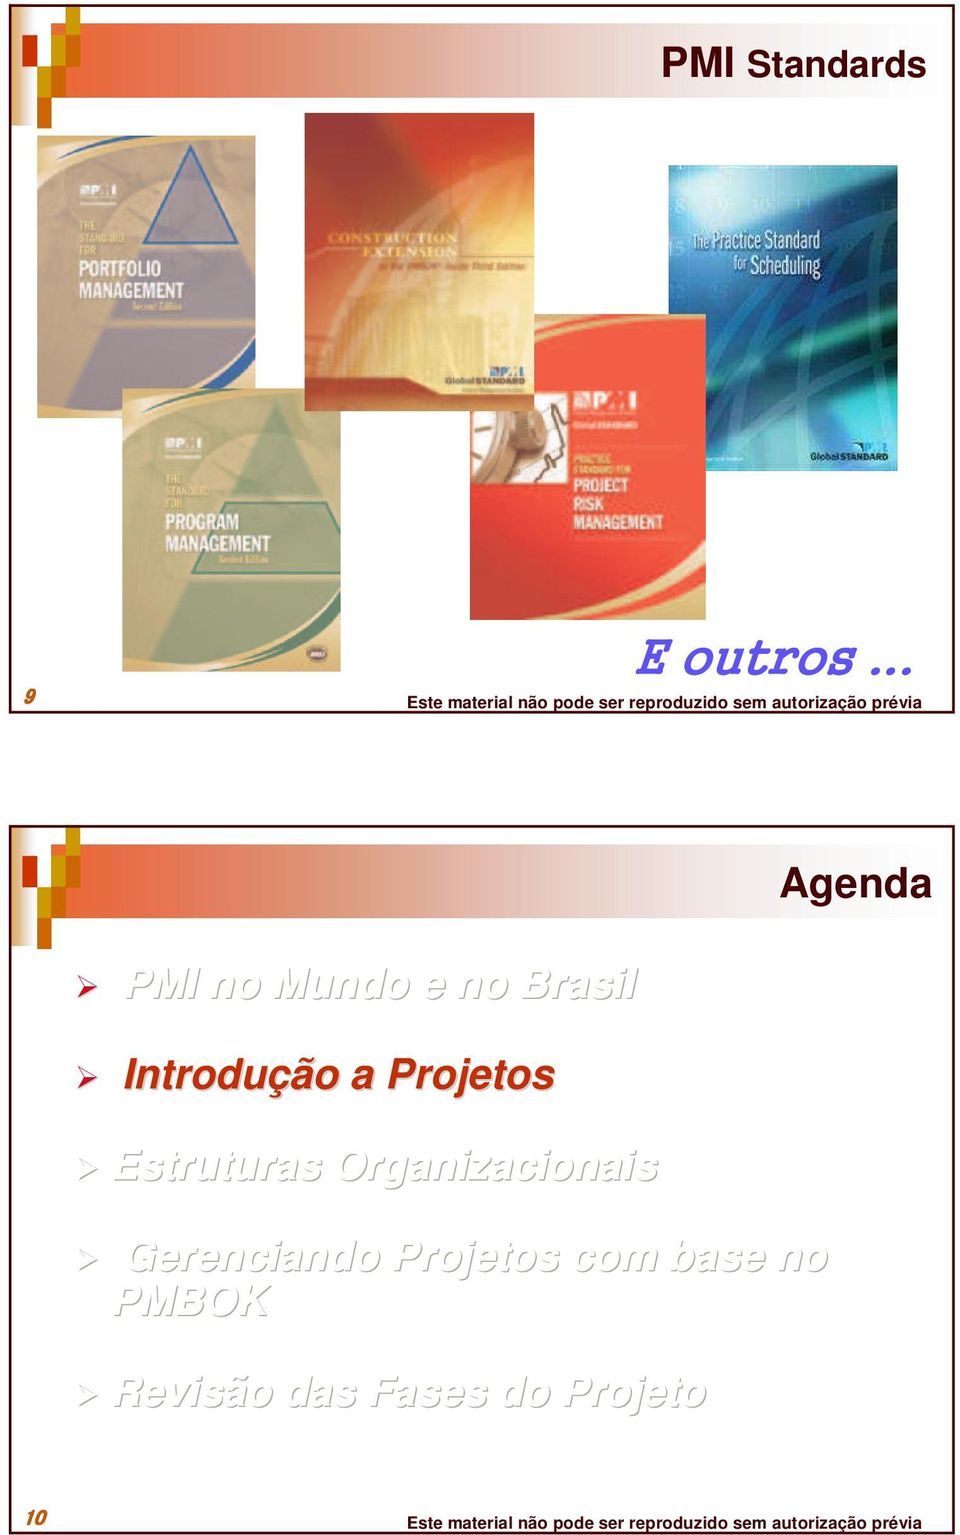 Organizacionais Gerenciando Projetos com